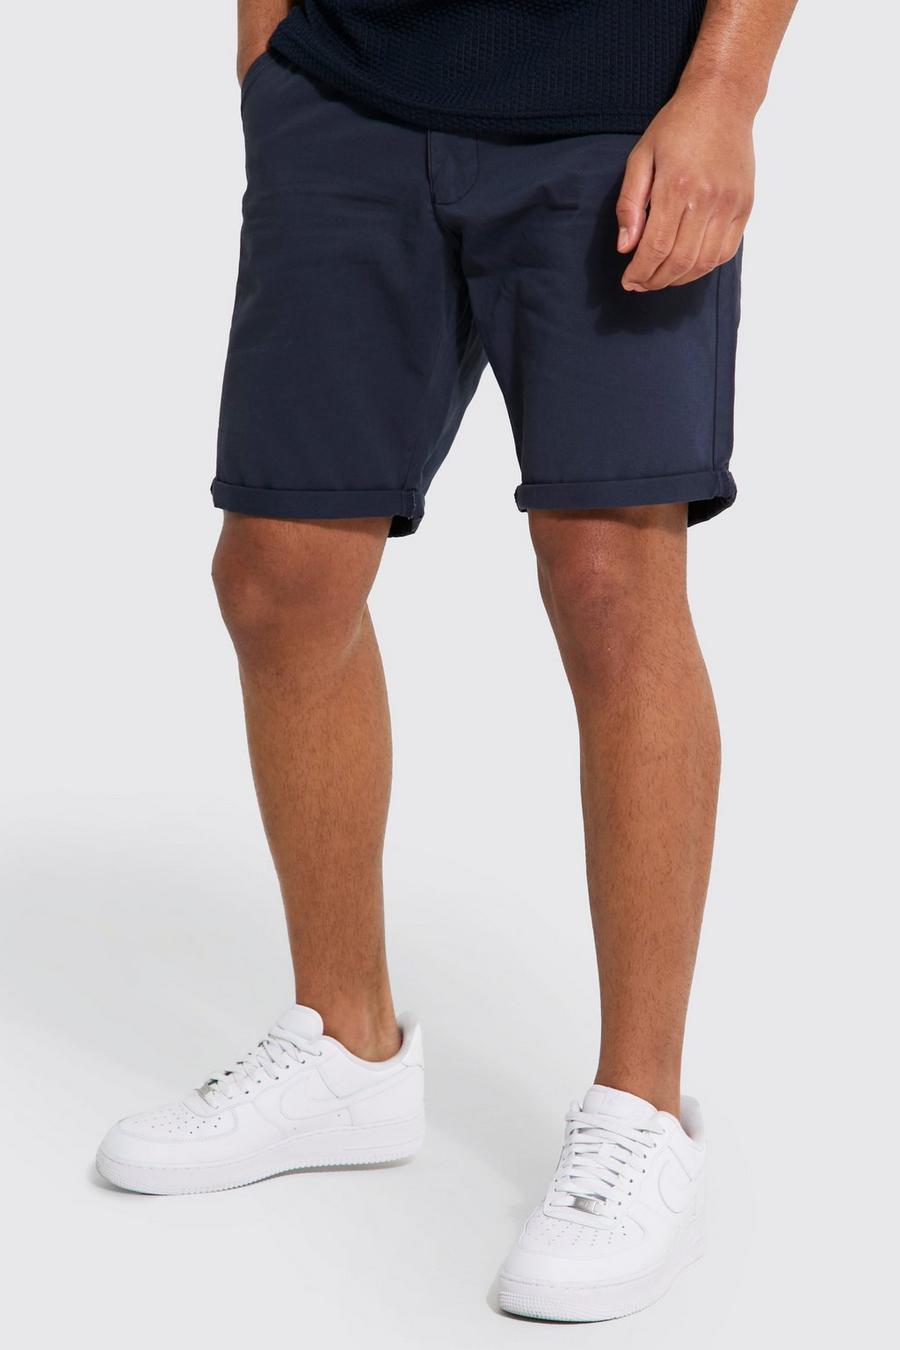 Pantaloncini Chino Tall Slim Fit, Navy